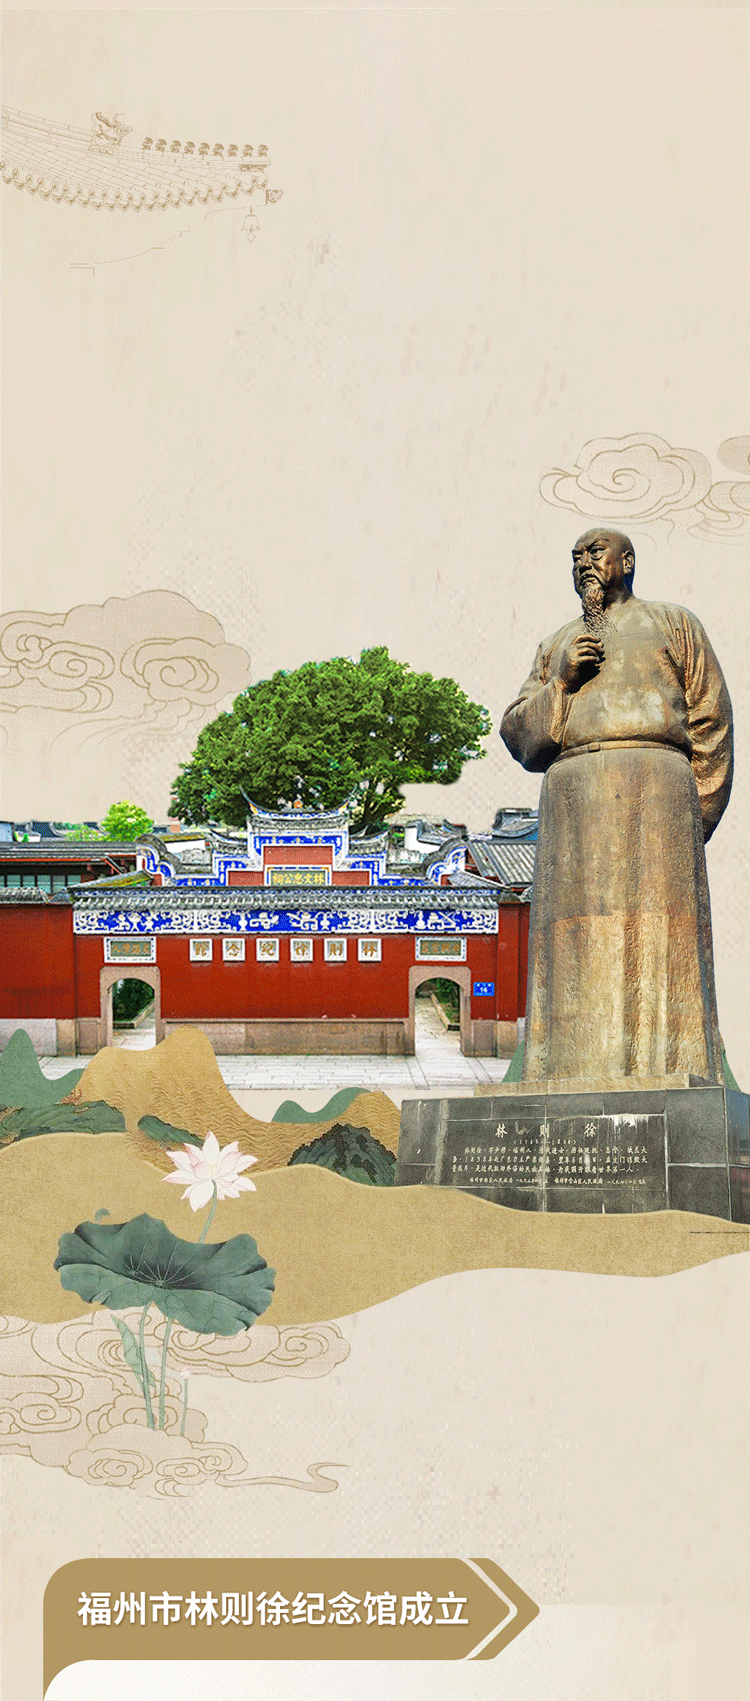 一张图带你回顾福州市林则徐纪念馆40年发展历程